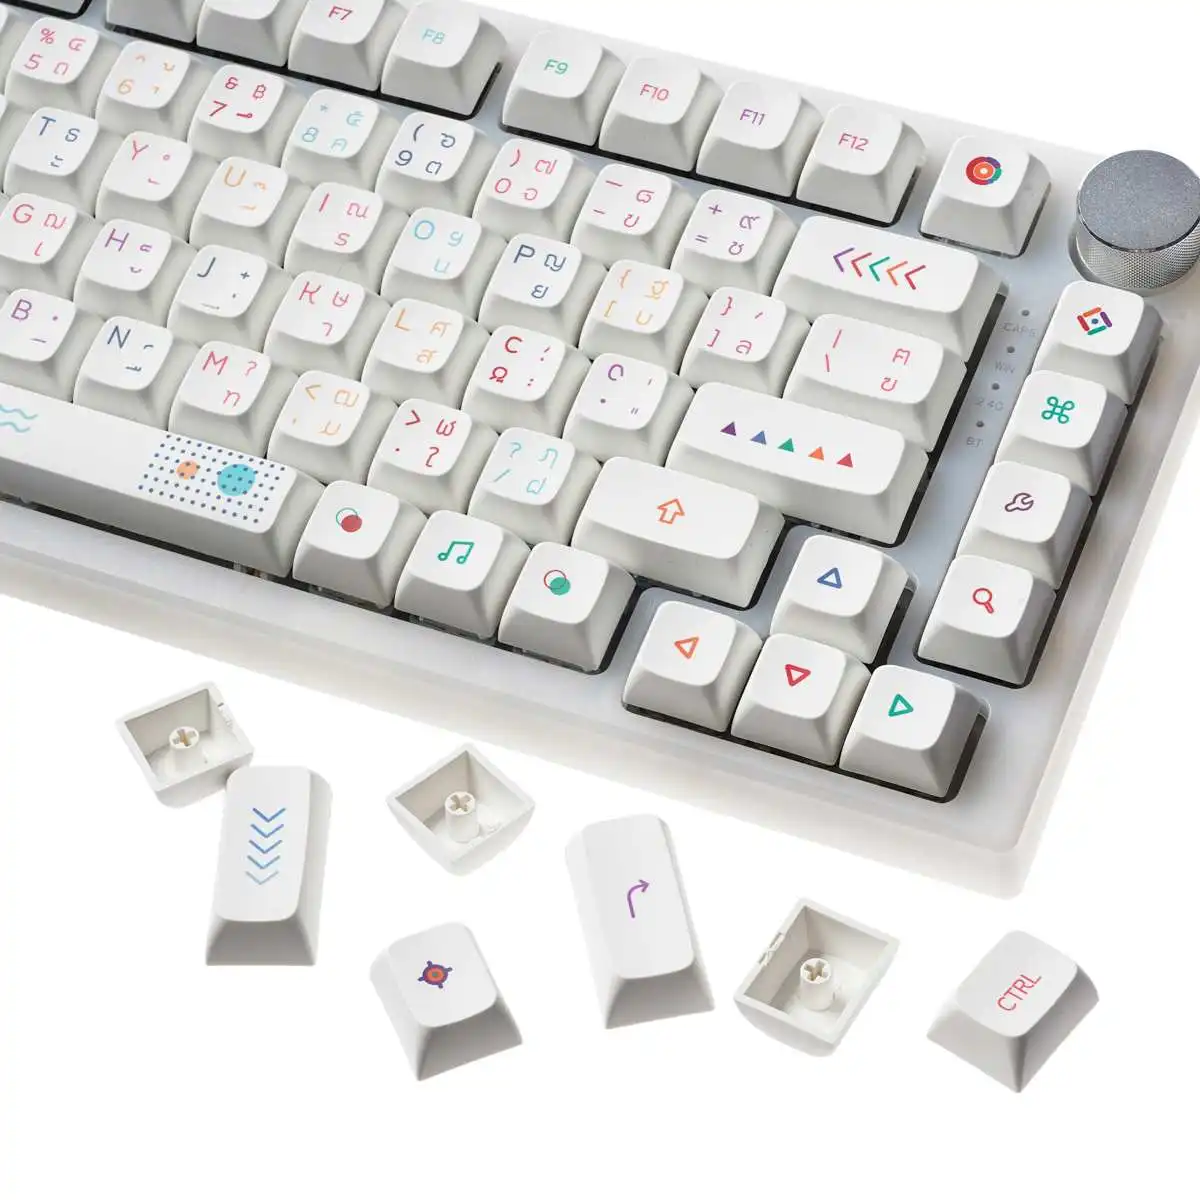 

XDA профиль 127 клавиш/комплект PBT Keycap краска-SUB Персонализированная Минималистичная белая английская тайская клавиатура для механической кла...